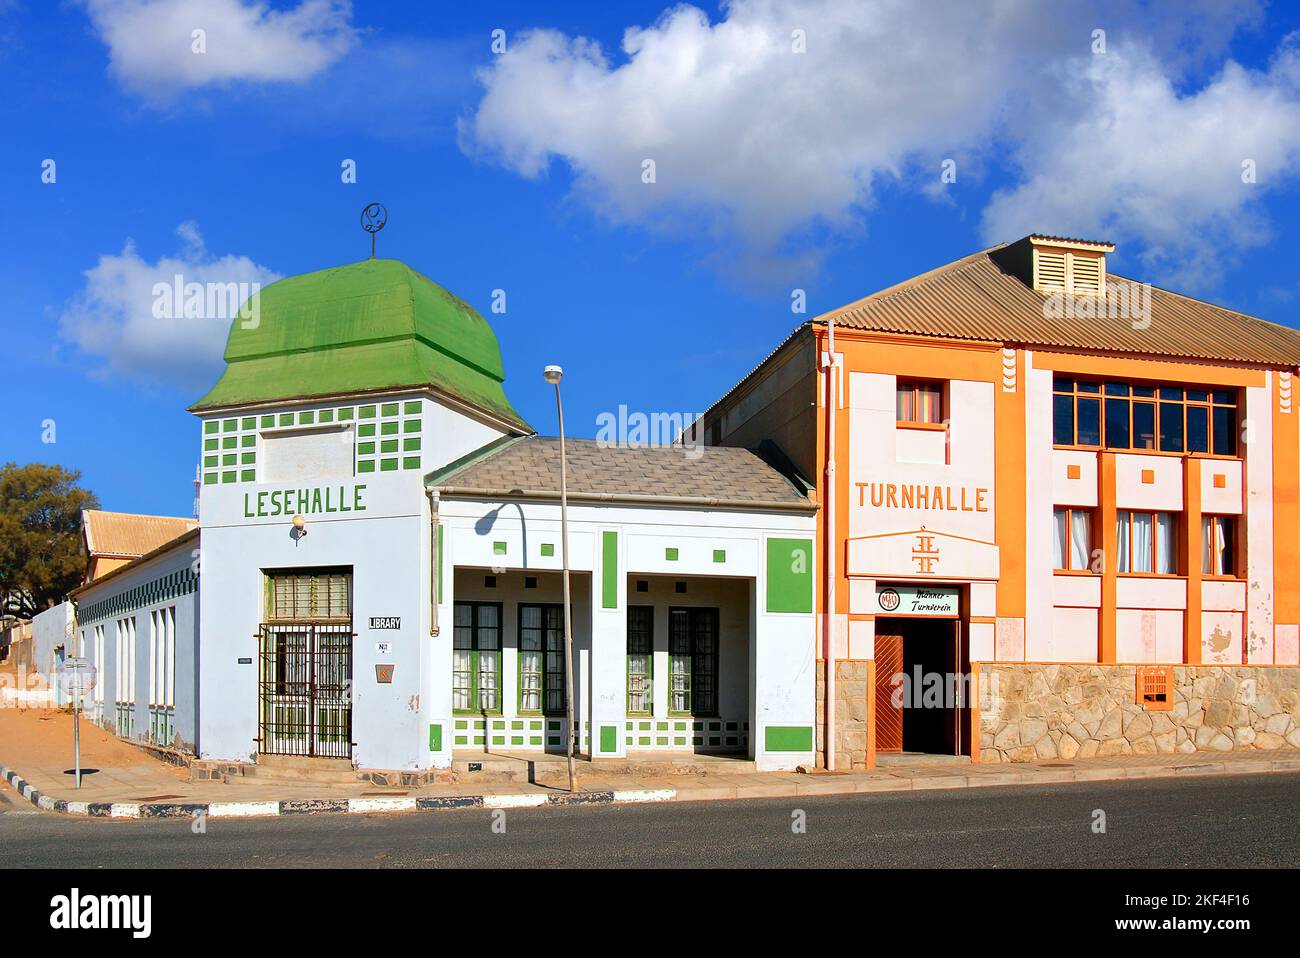 Deutsches Gebäude aus der Kolonialzeit in Lüderitz, Namibia. Turnhalle und Lesehalle, Bücherei, Stock Photo